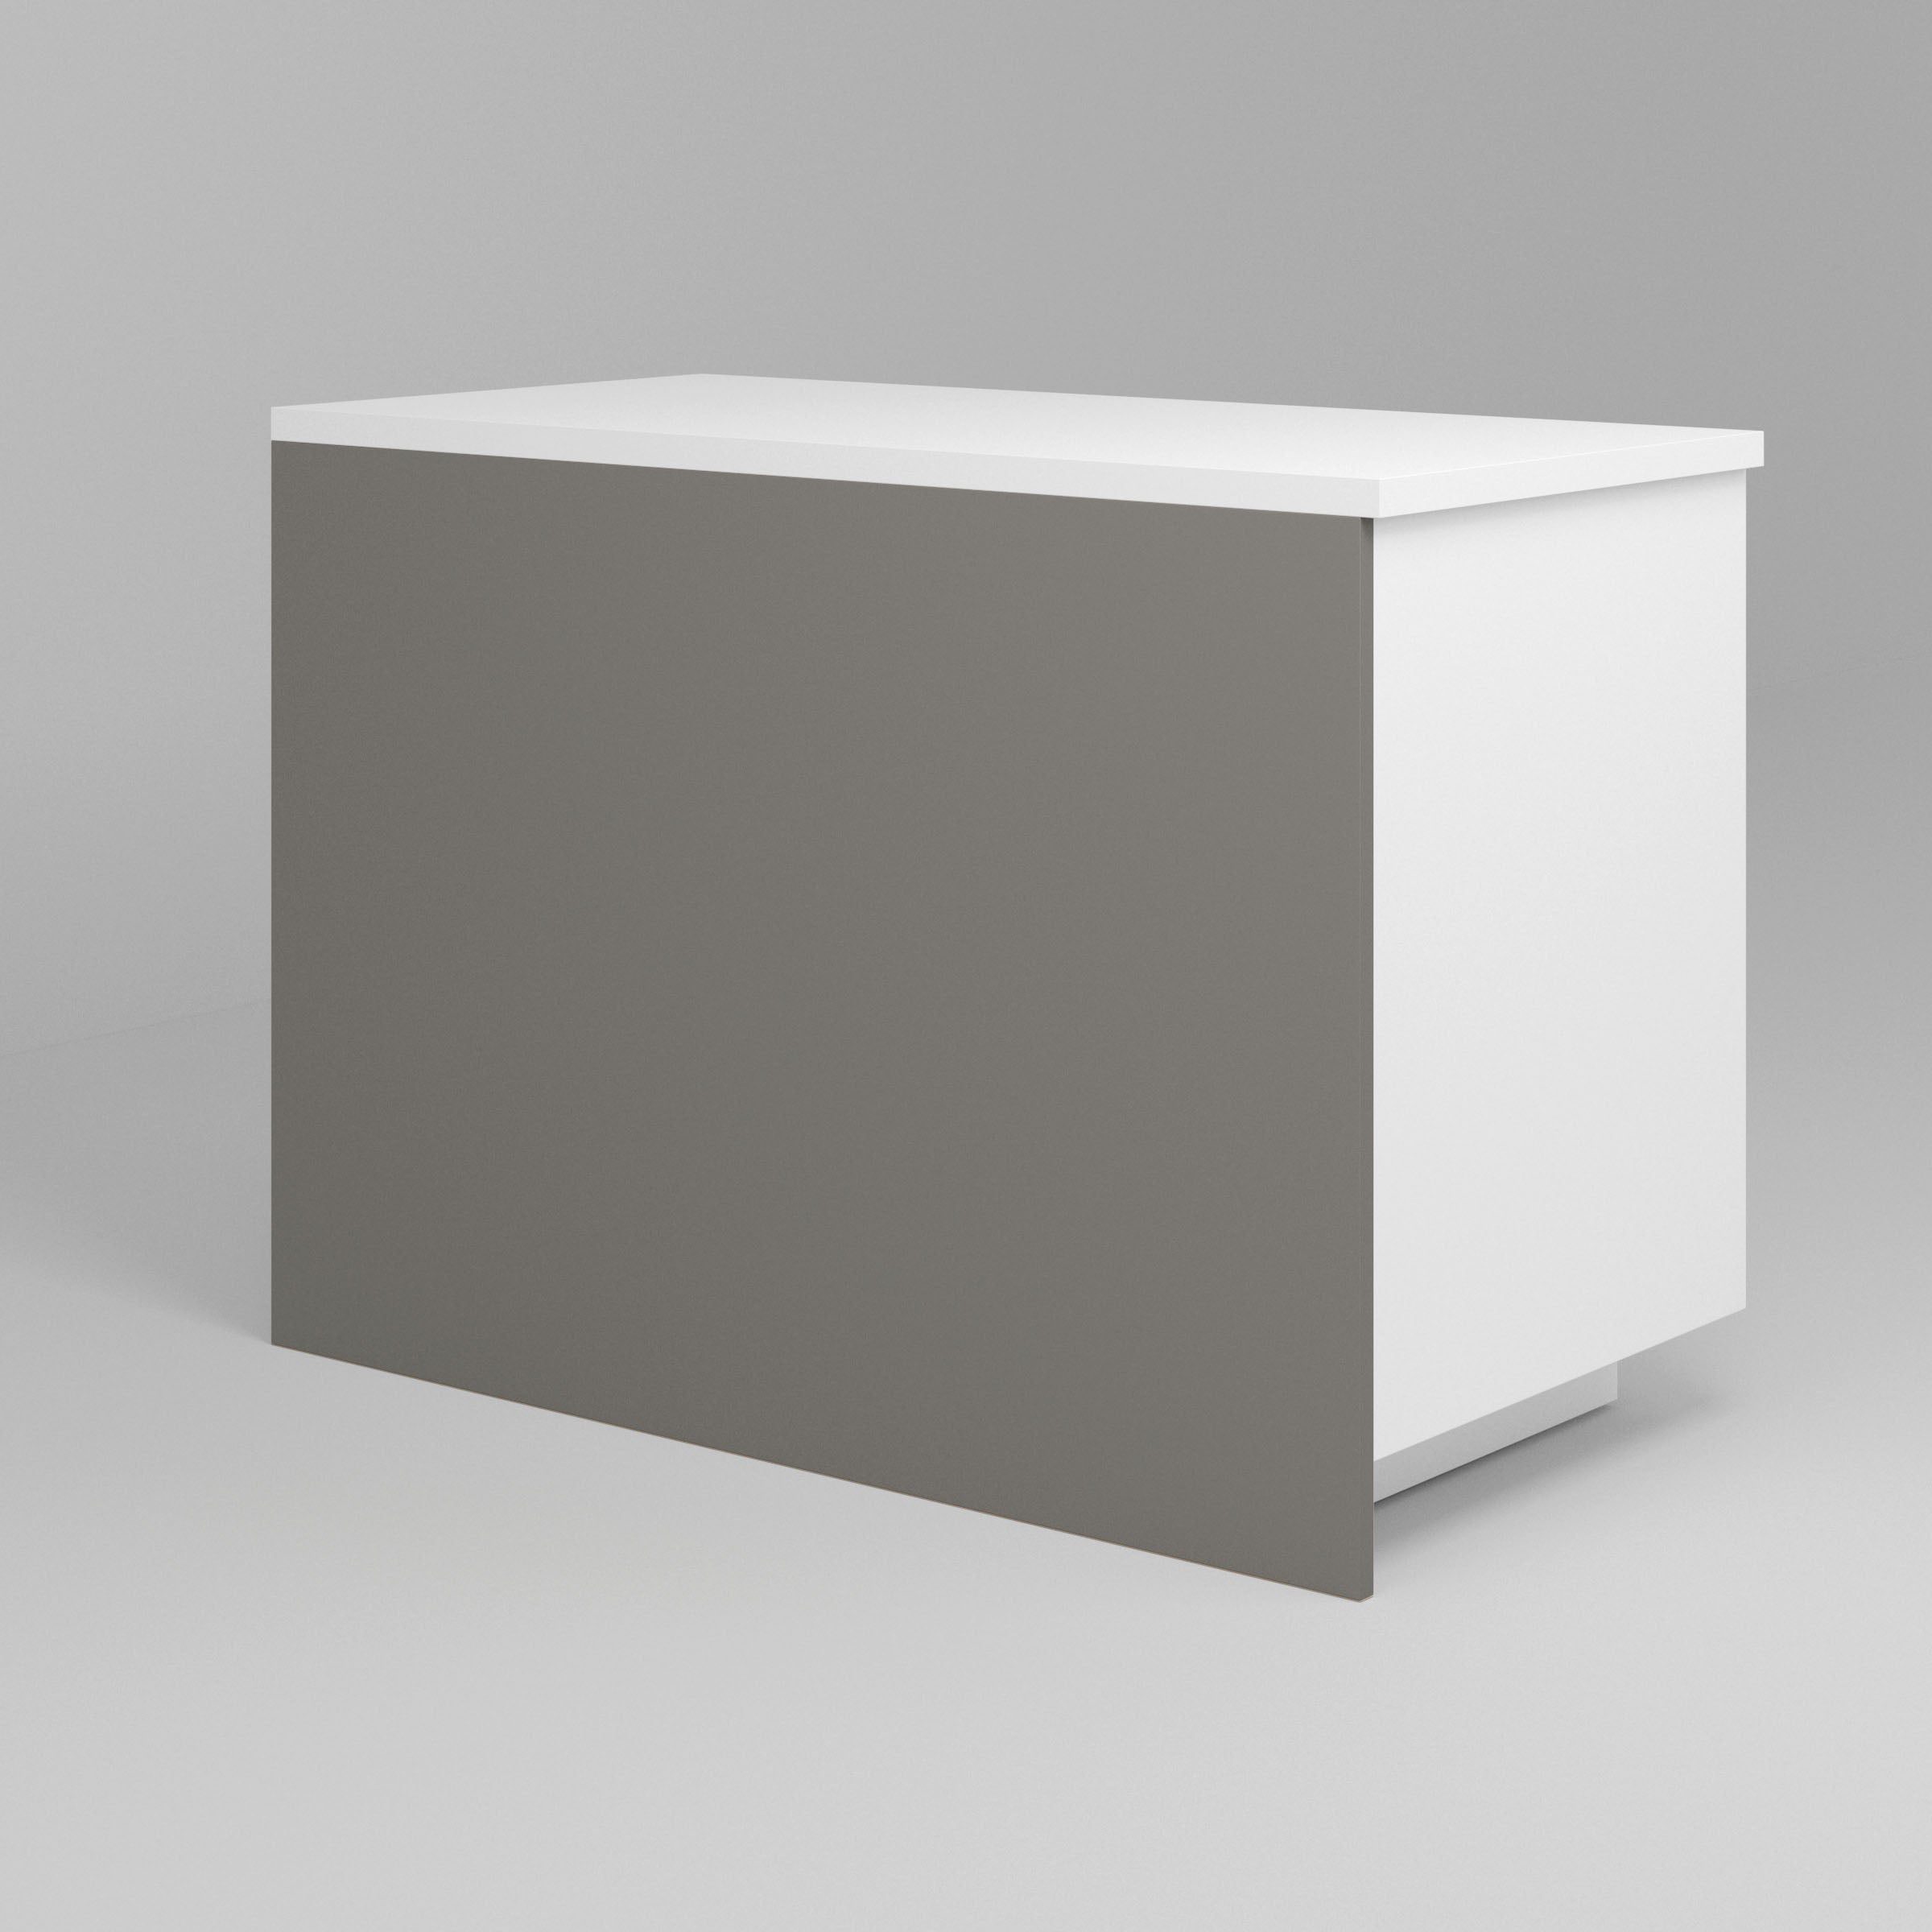 Light Grey Supermatte Slab Cover Panels for Sektion